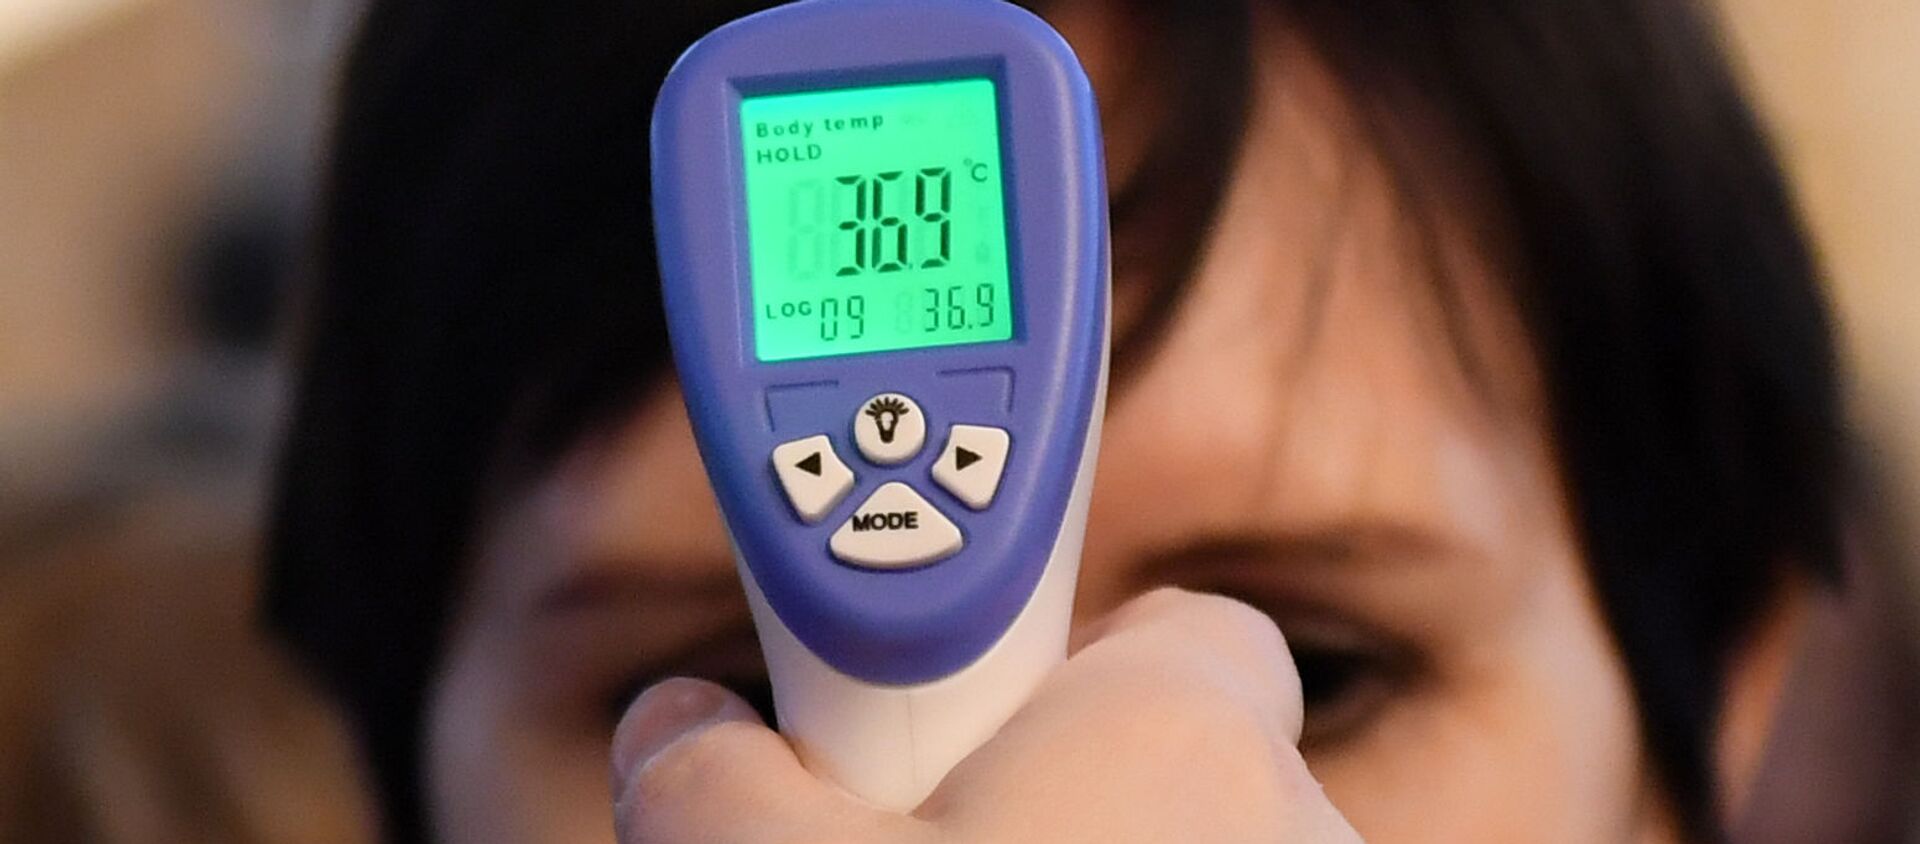 Женщине измеряют температуру в связи с угрозой распространения коронавирусной инфекции. - Sputnik Тоҷикистон, 1920, 31.01.2021